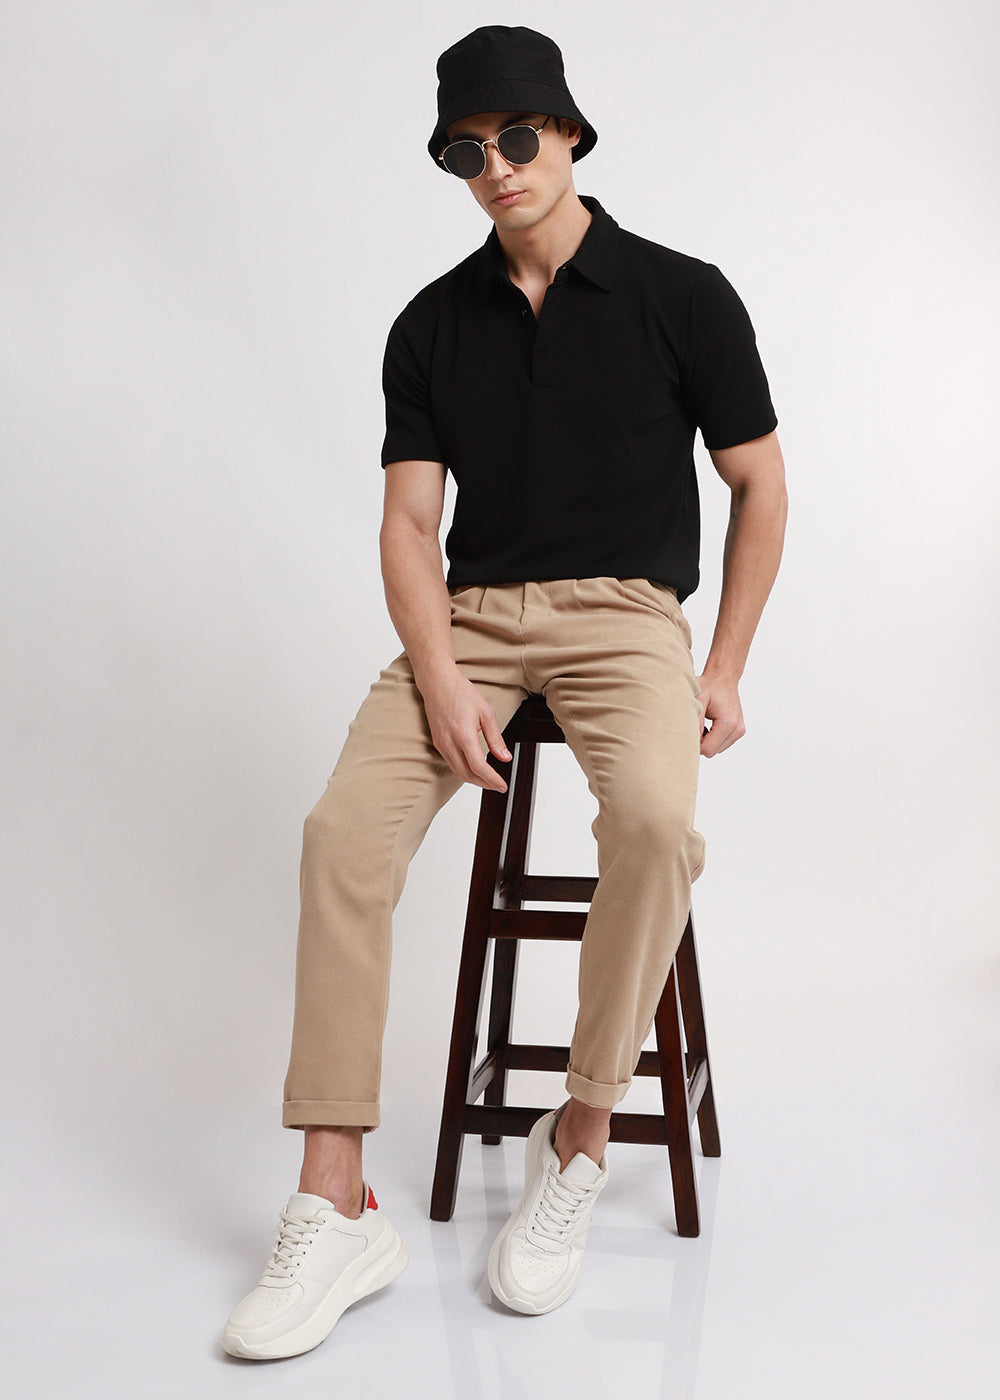 Malibu Beige Korean Trouser